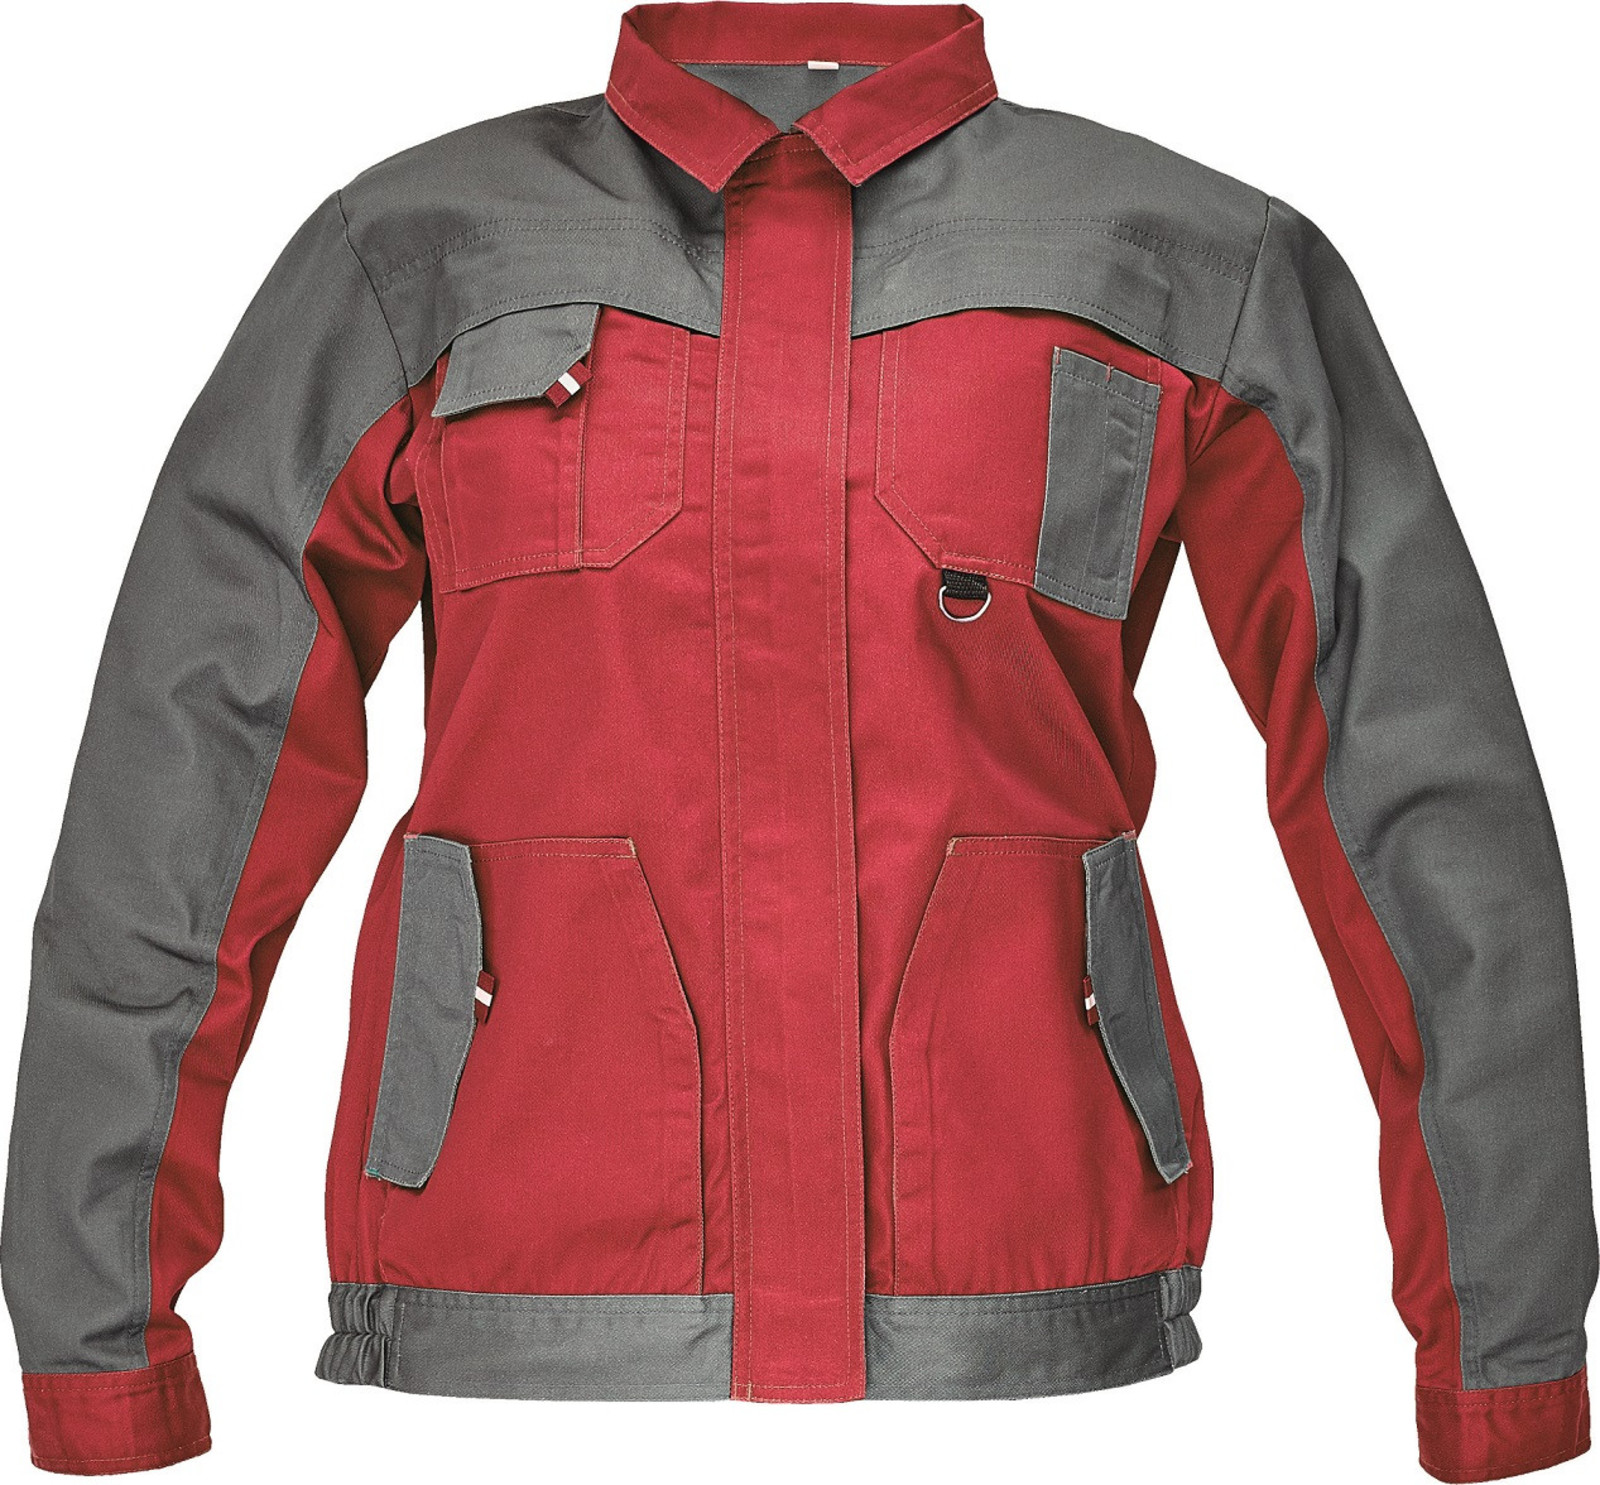 Tenká dámska montérková bunda Max Evo Lady - veľkosť: 40, farba: sivá/červená